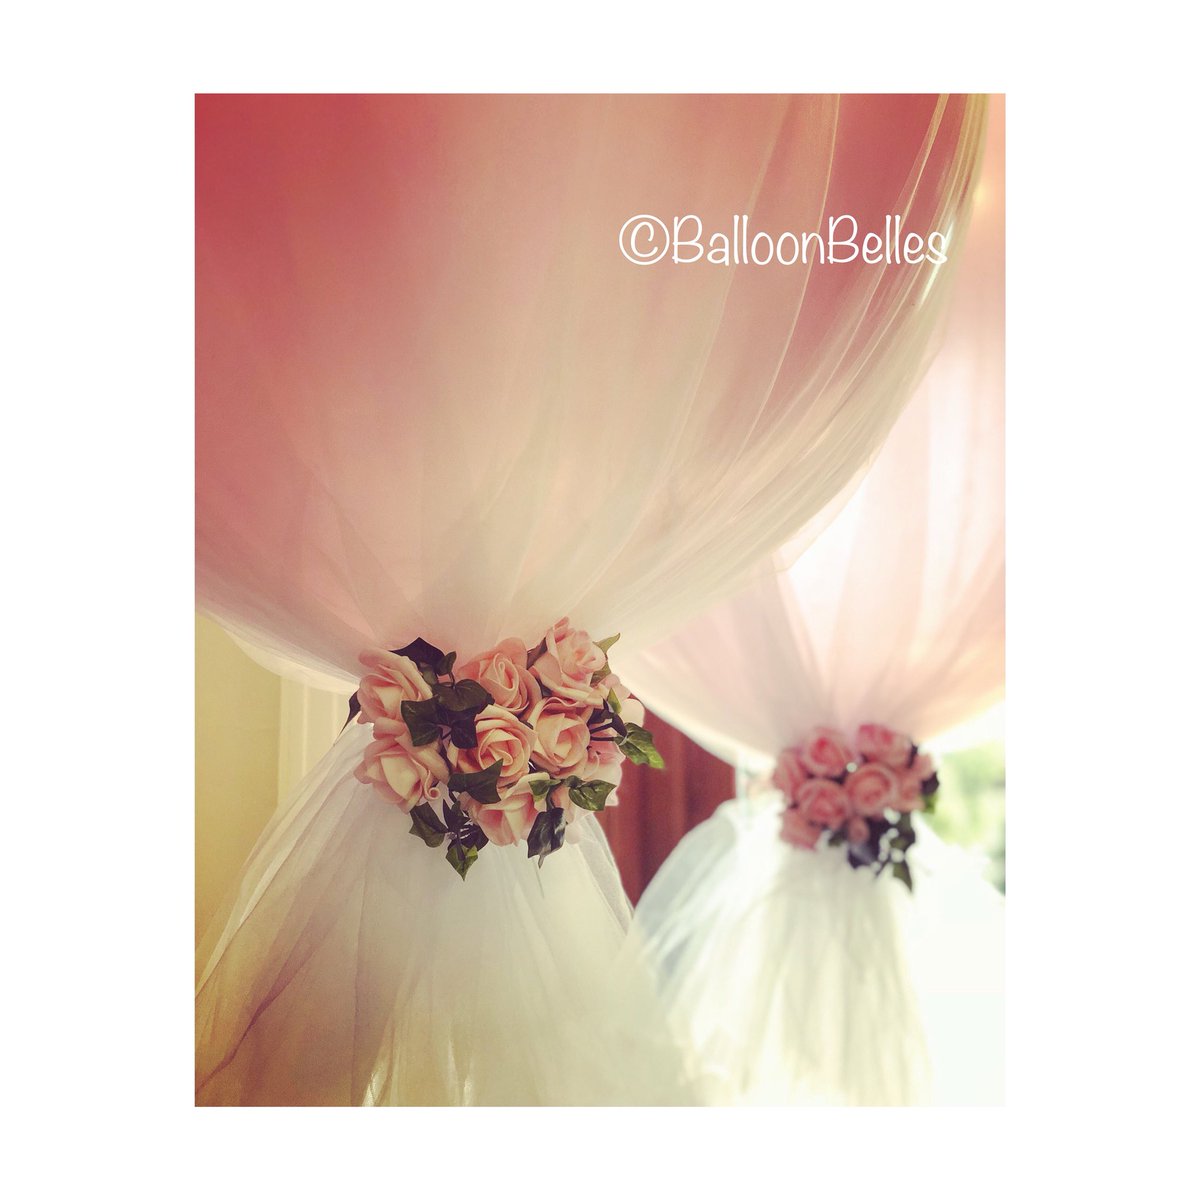 #tulleballoons #bespokeballoons #weddingballoons #weddinginspo #balloons